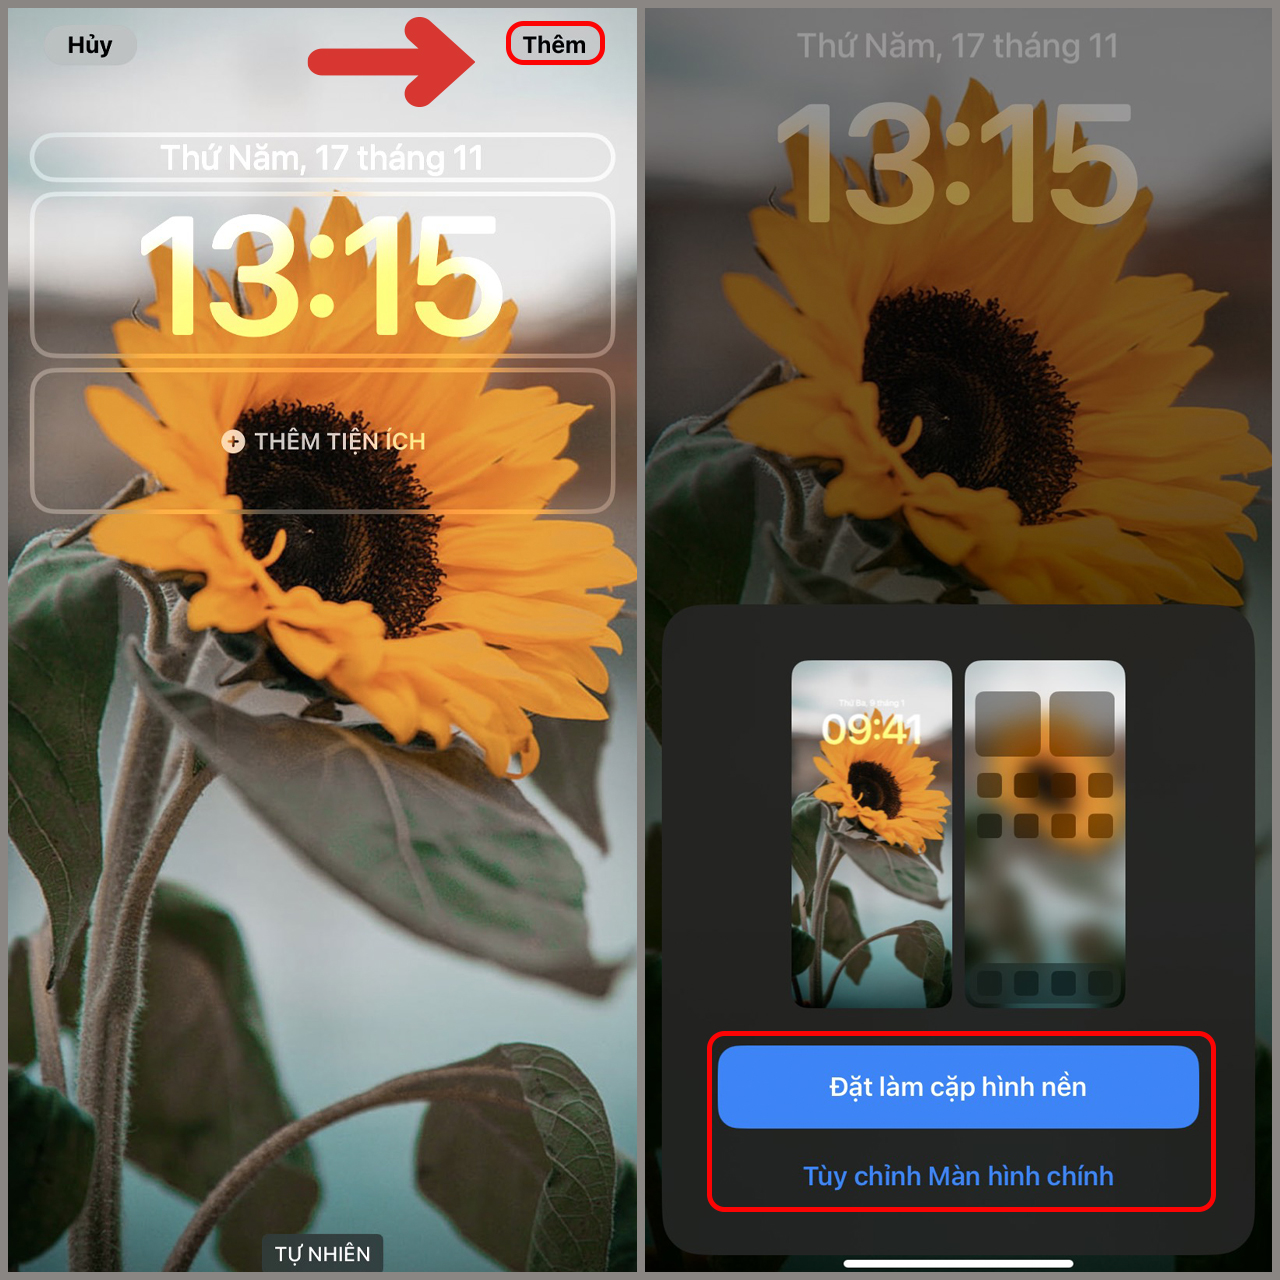 Hình nền hoa Hướng Dương cho iPhone: Tưởng tượng chiếc điện thoại của bạn được trang trí bằng những bông hoa Hướng Dương đầy sống động và tươi mới! Với rất nhiều kiểu dáng và phong cách khác nhau, hình nền hoa Hướng Dương sẽ giúp cho chiếc iPhone của bạn trở nên độc đáo và sáng tạo hơn bao giờ hết. Tải ngay và trải nghiệm nhé!